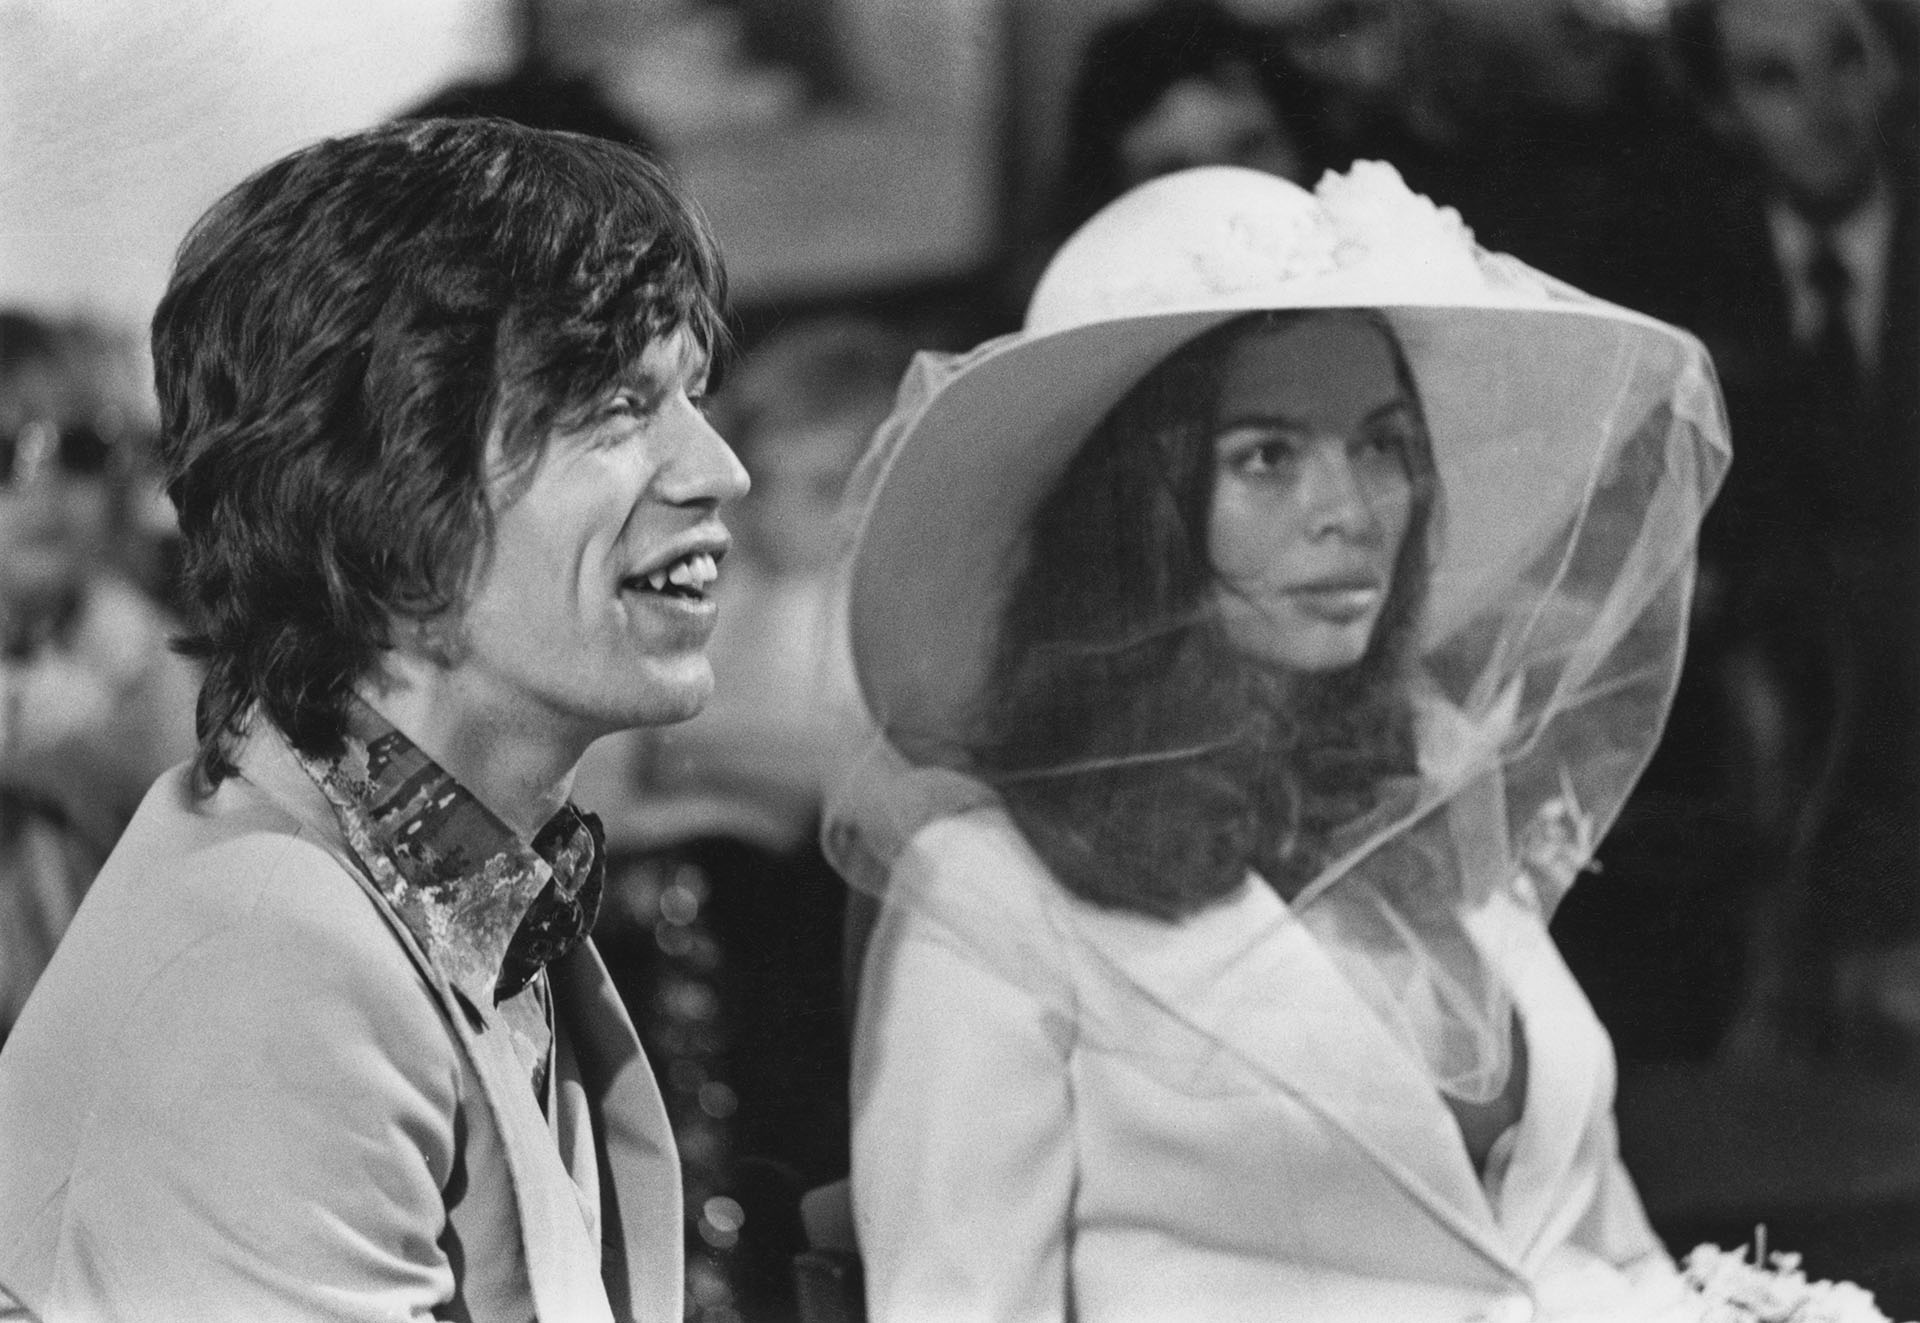 Mick and Bianca Jagger en su boda en 1971. Bianca fue su primera esposa. Las conquistas amorosas del cantante son célebres e innumerables (Reg Lancaster/Daily Express/Hulton Archive/Getty Images)